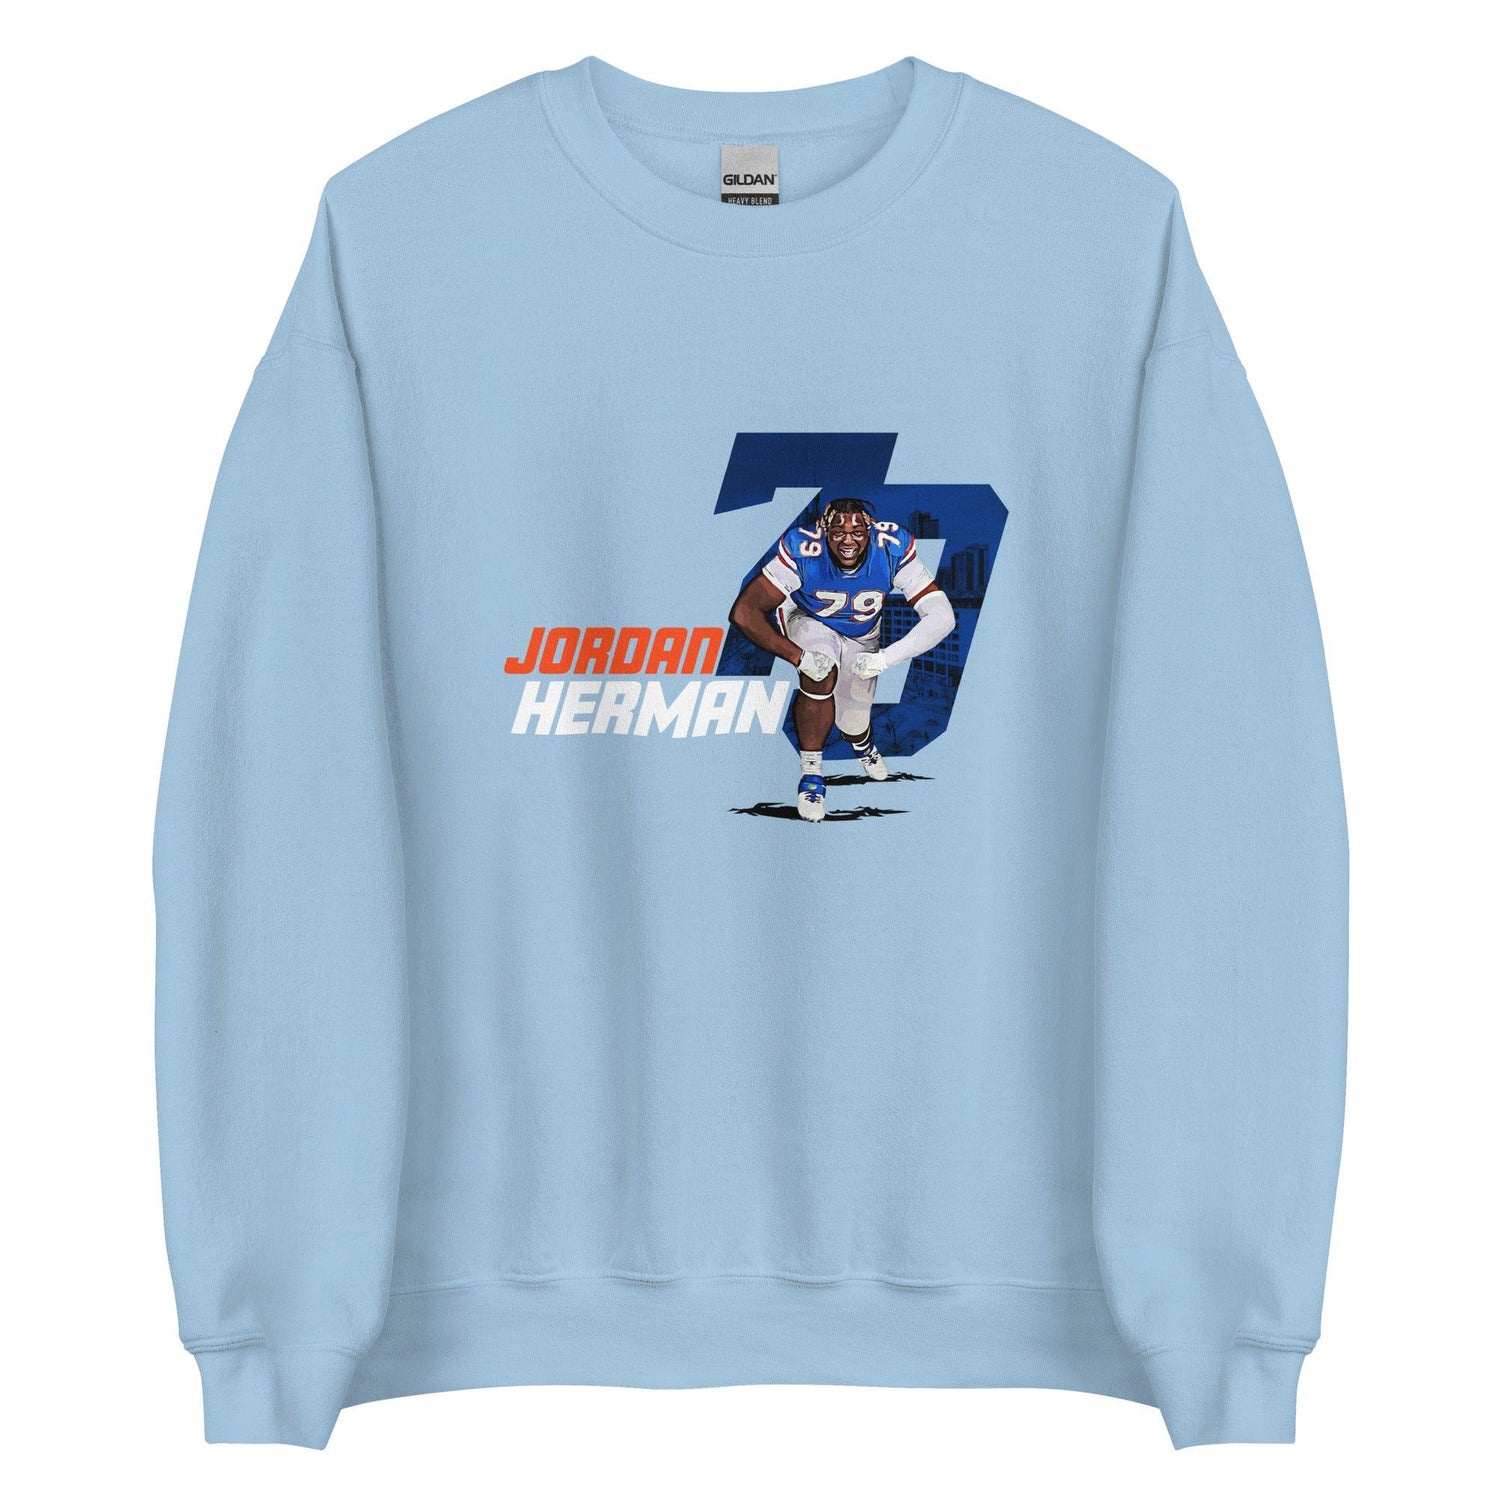 Jordan Herman "Gameday" Sweatshirt - Fan Arch